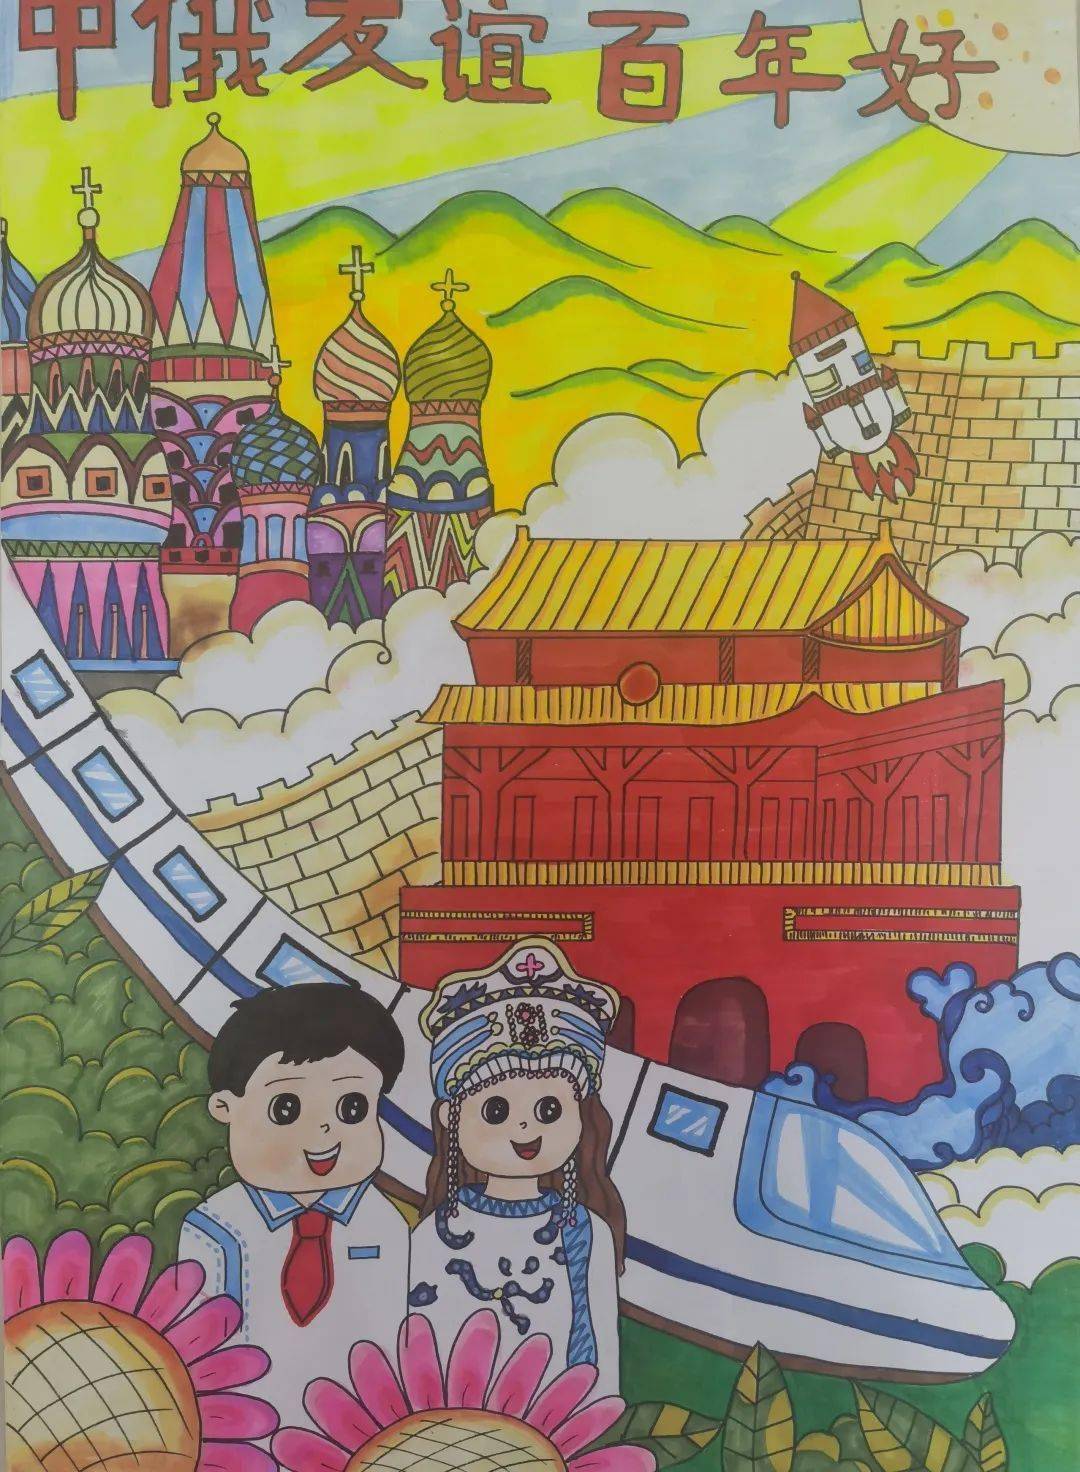 中俄友好儿童画作品图片